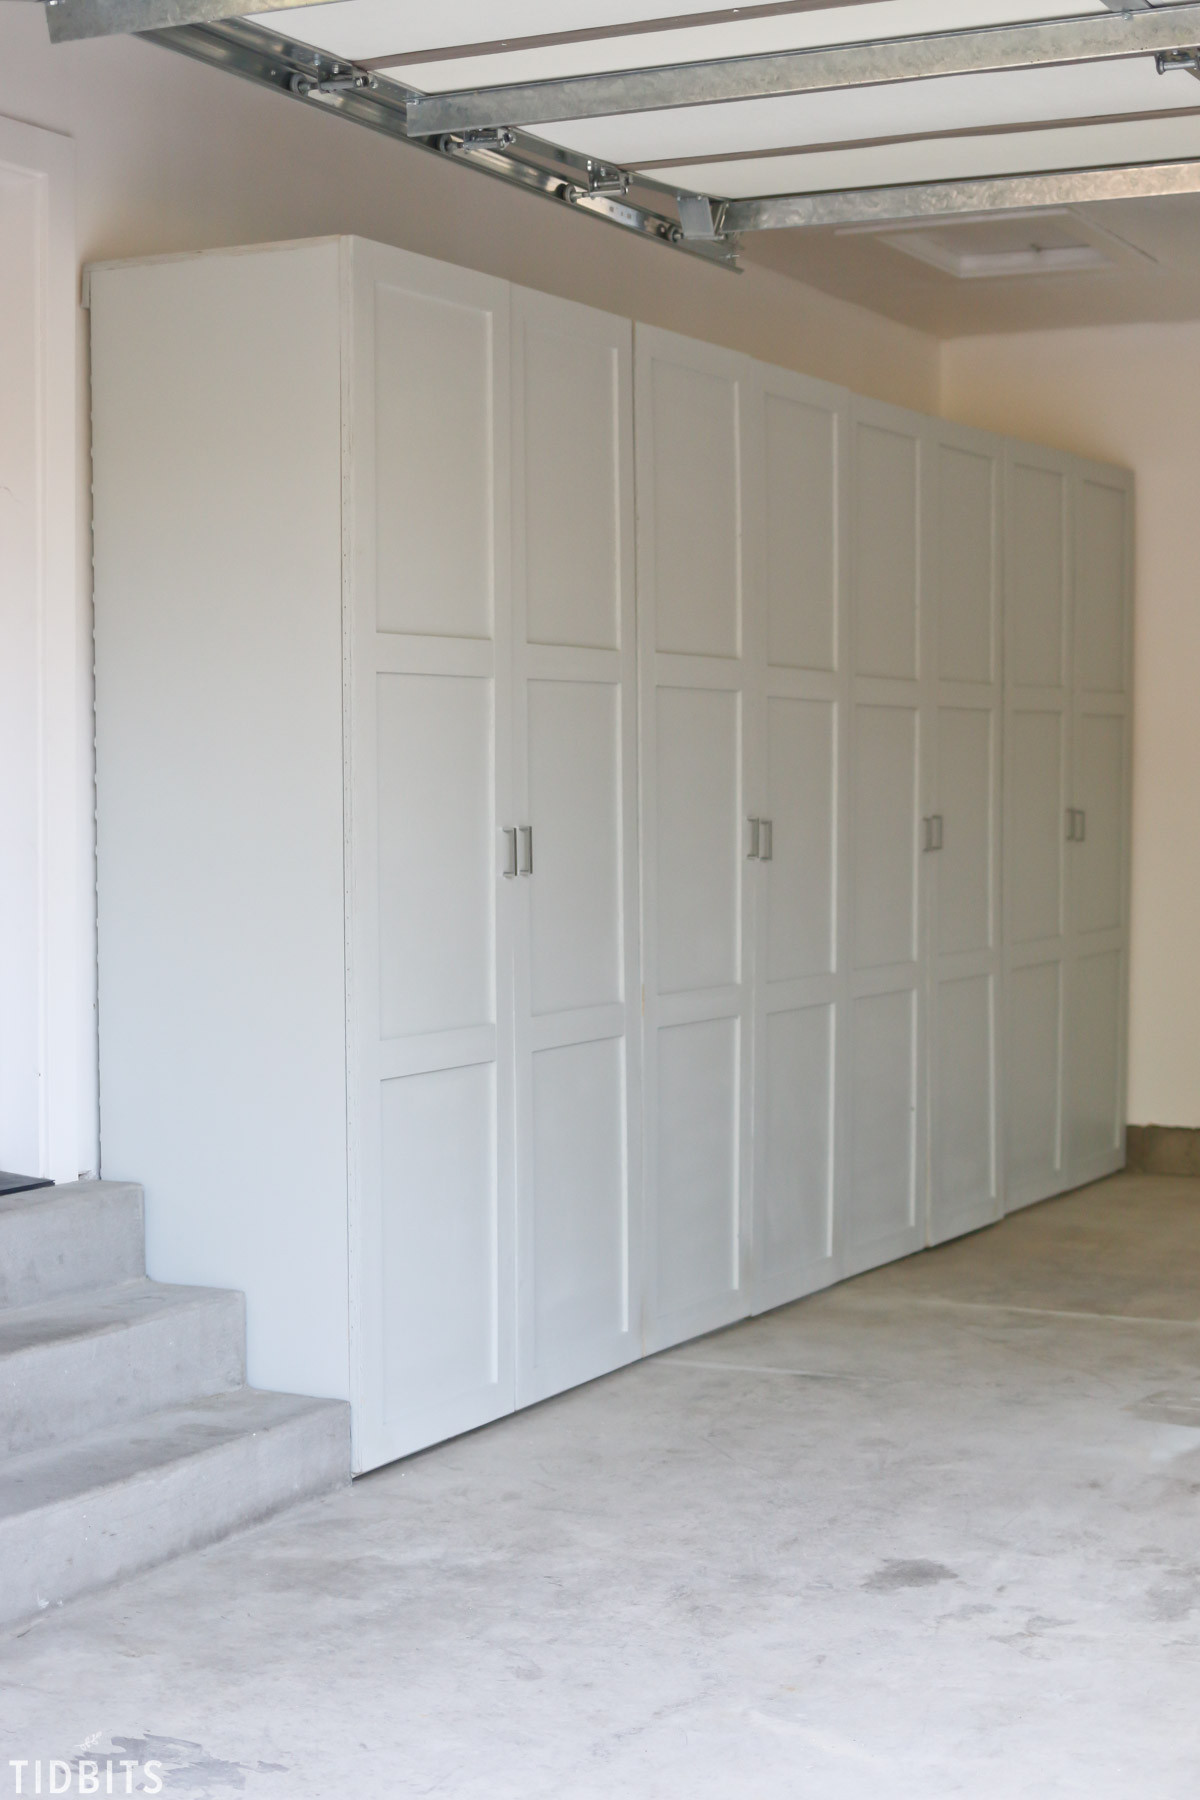 Best ideas about Garage Storage Cabinet
. Save or Pin Garage Storage Cabinets Now.